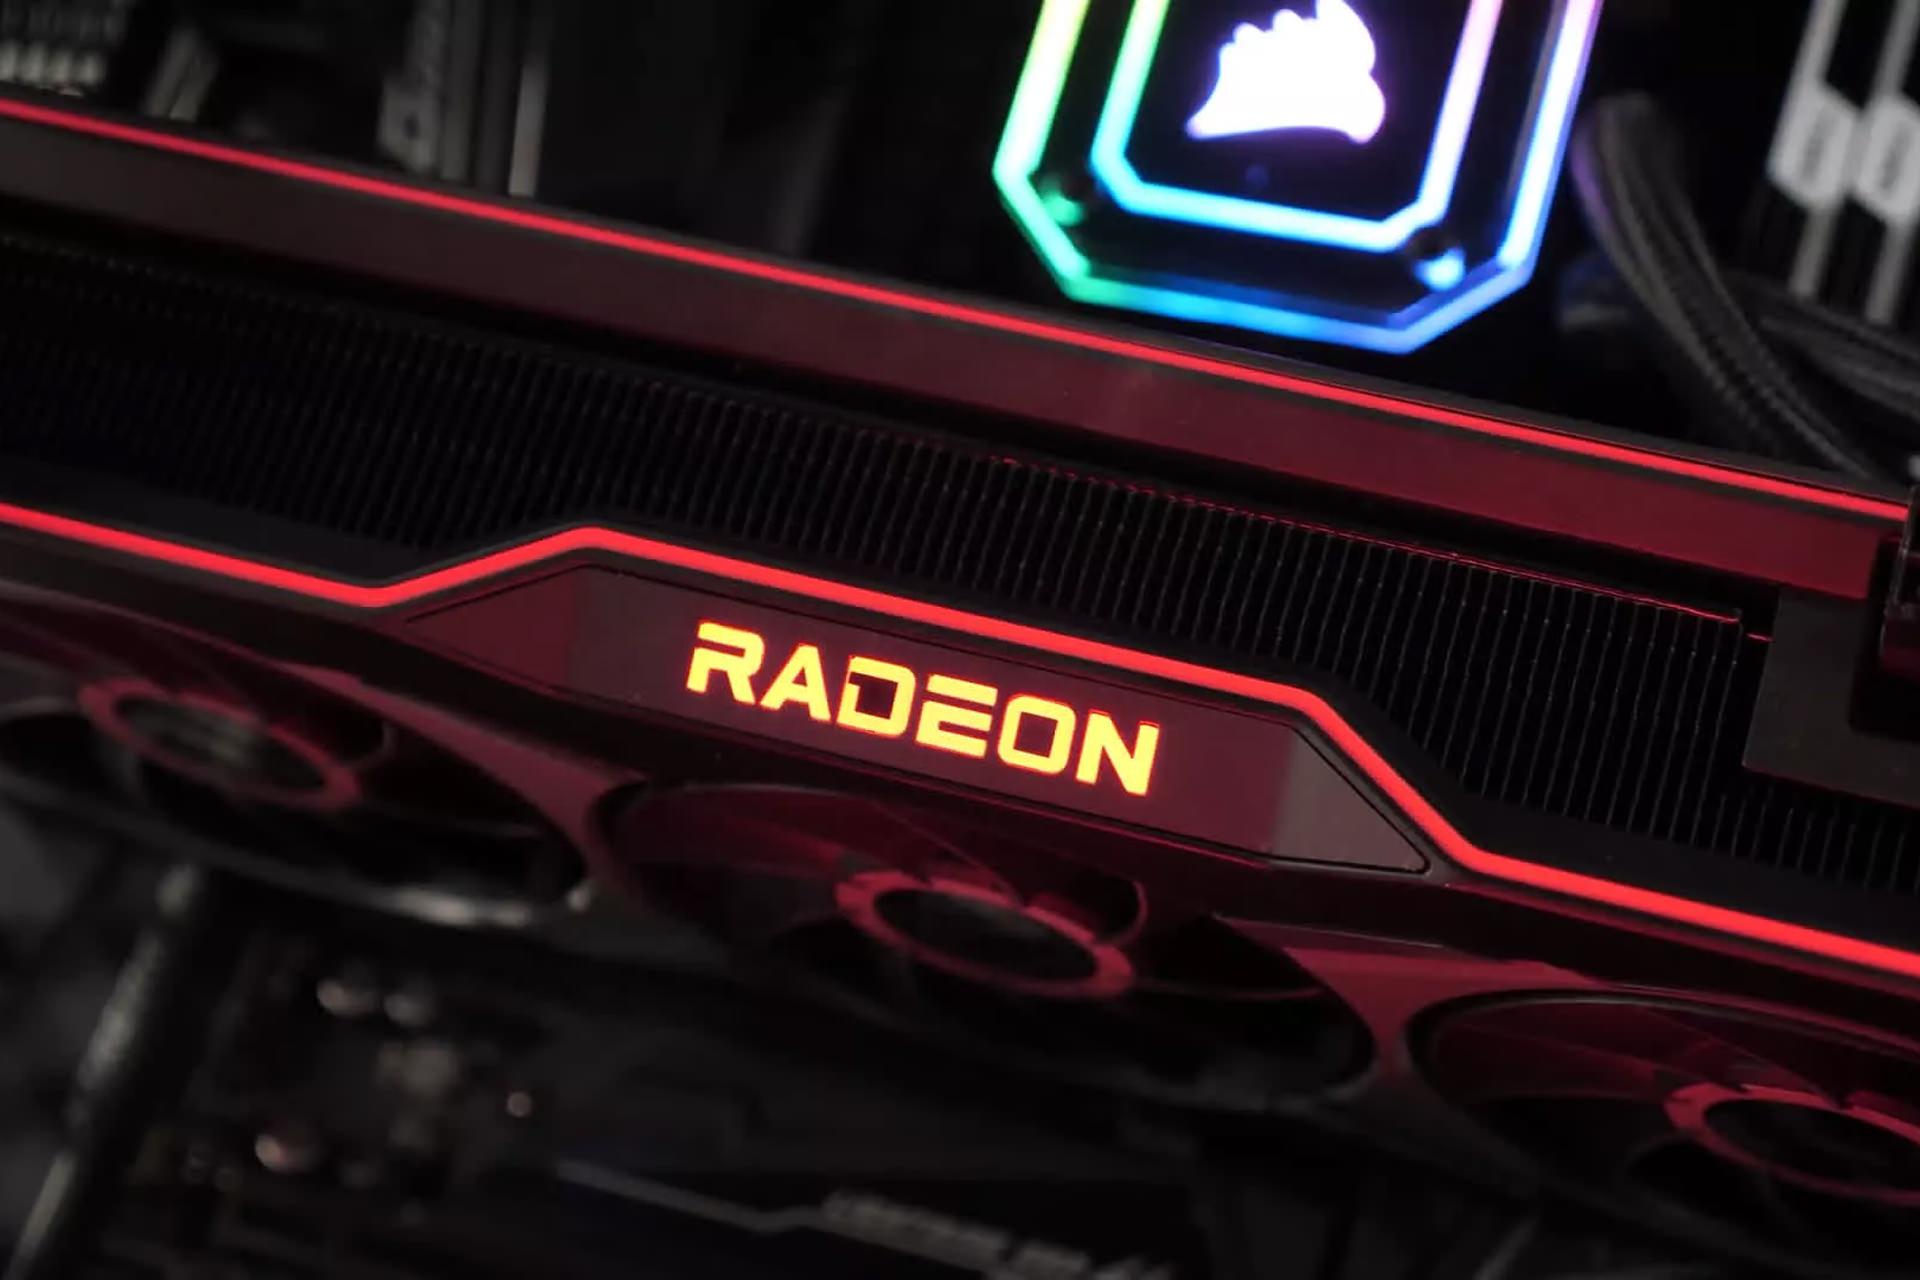 لوگو قرمز Radeon روی کارت گرافیک ای ام دی رادئون AMD در داخل کیس نمای نزدیک